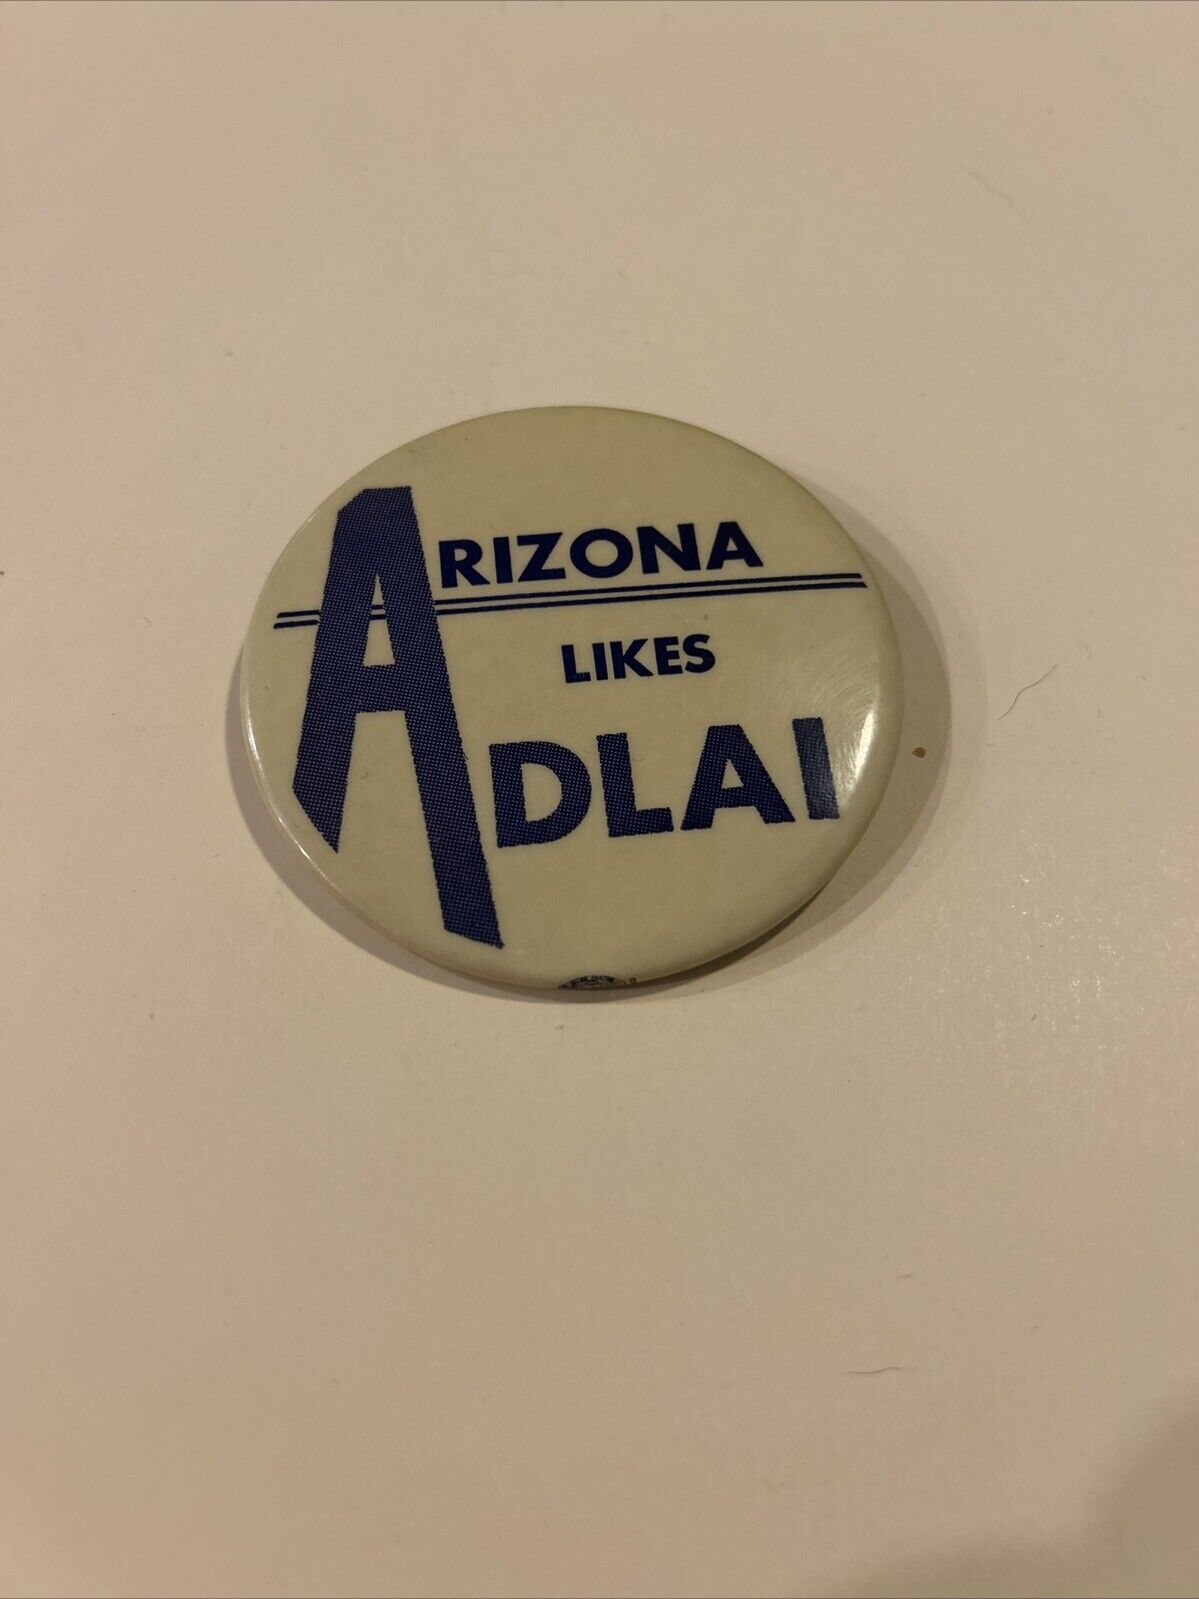 Arizona Likes Adlai presidential pin